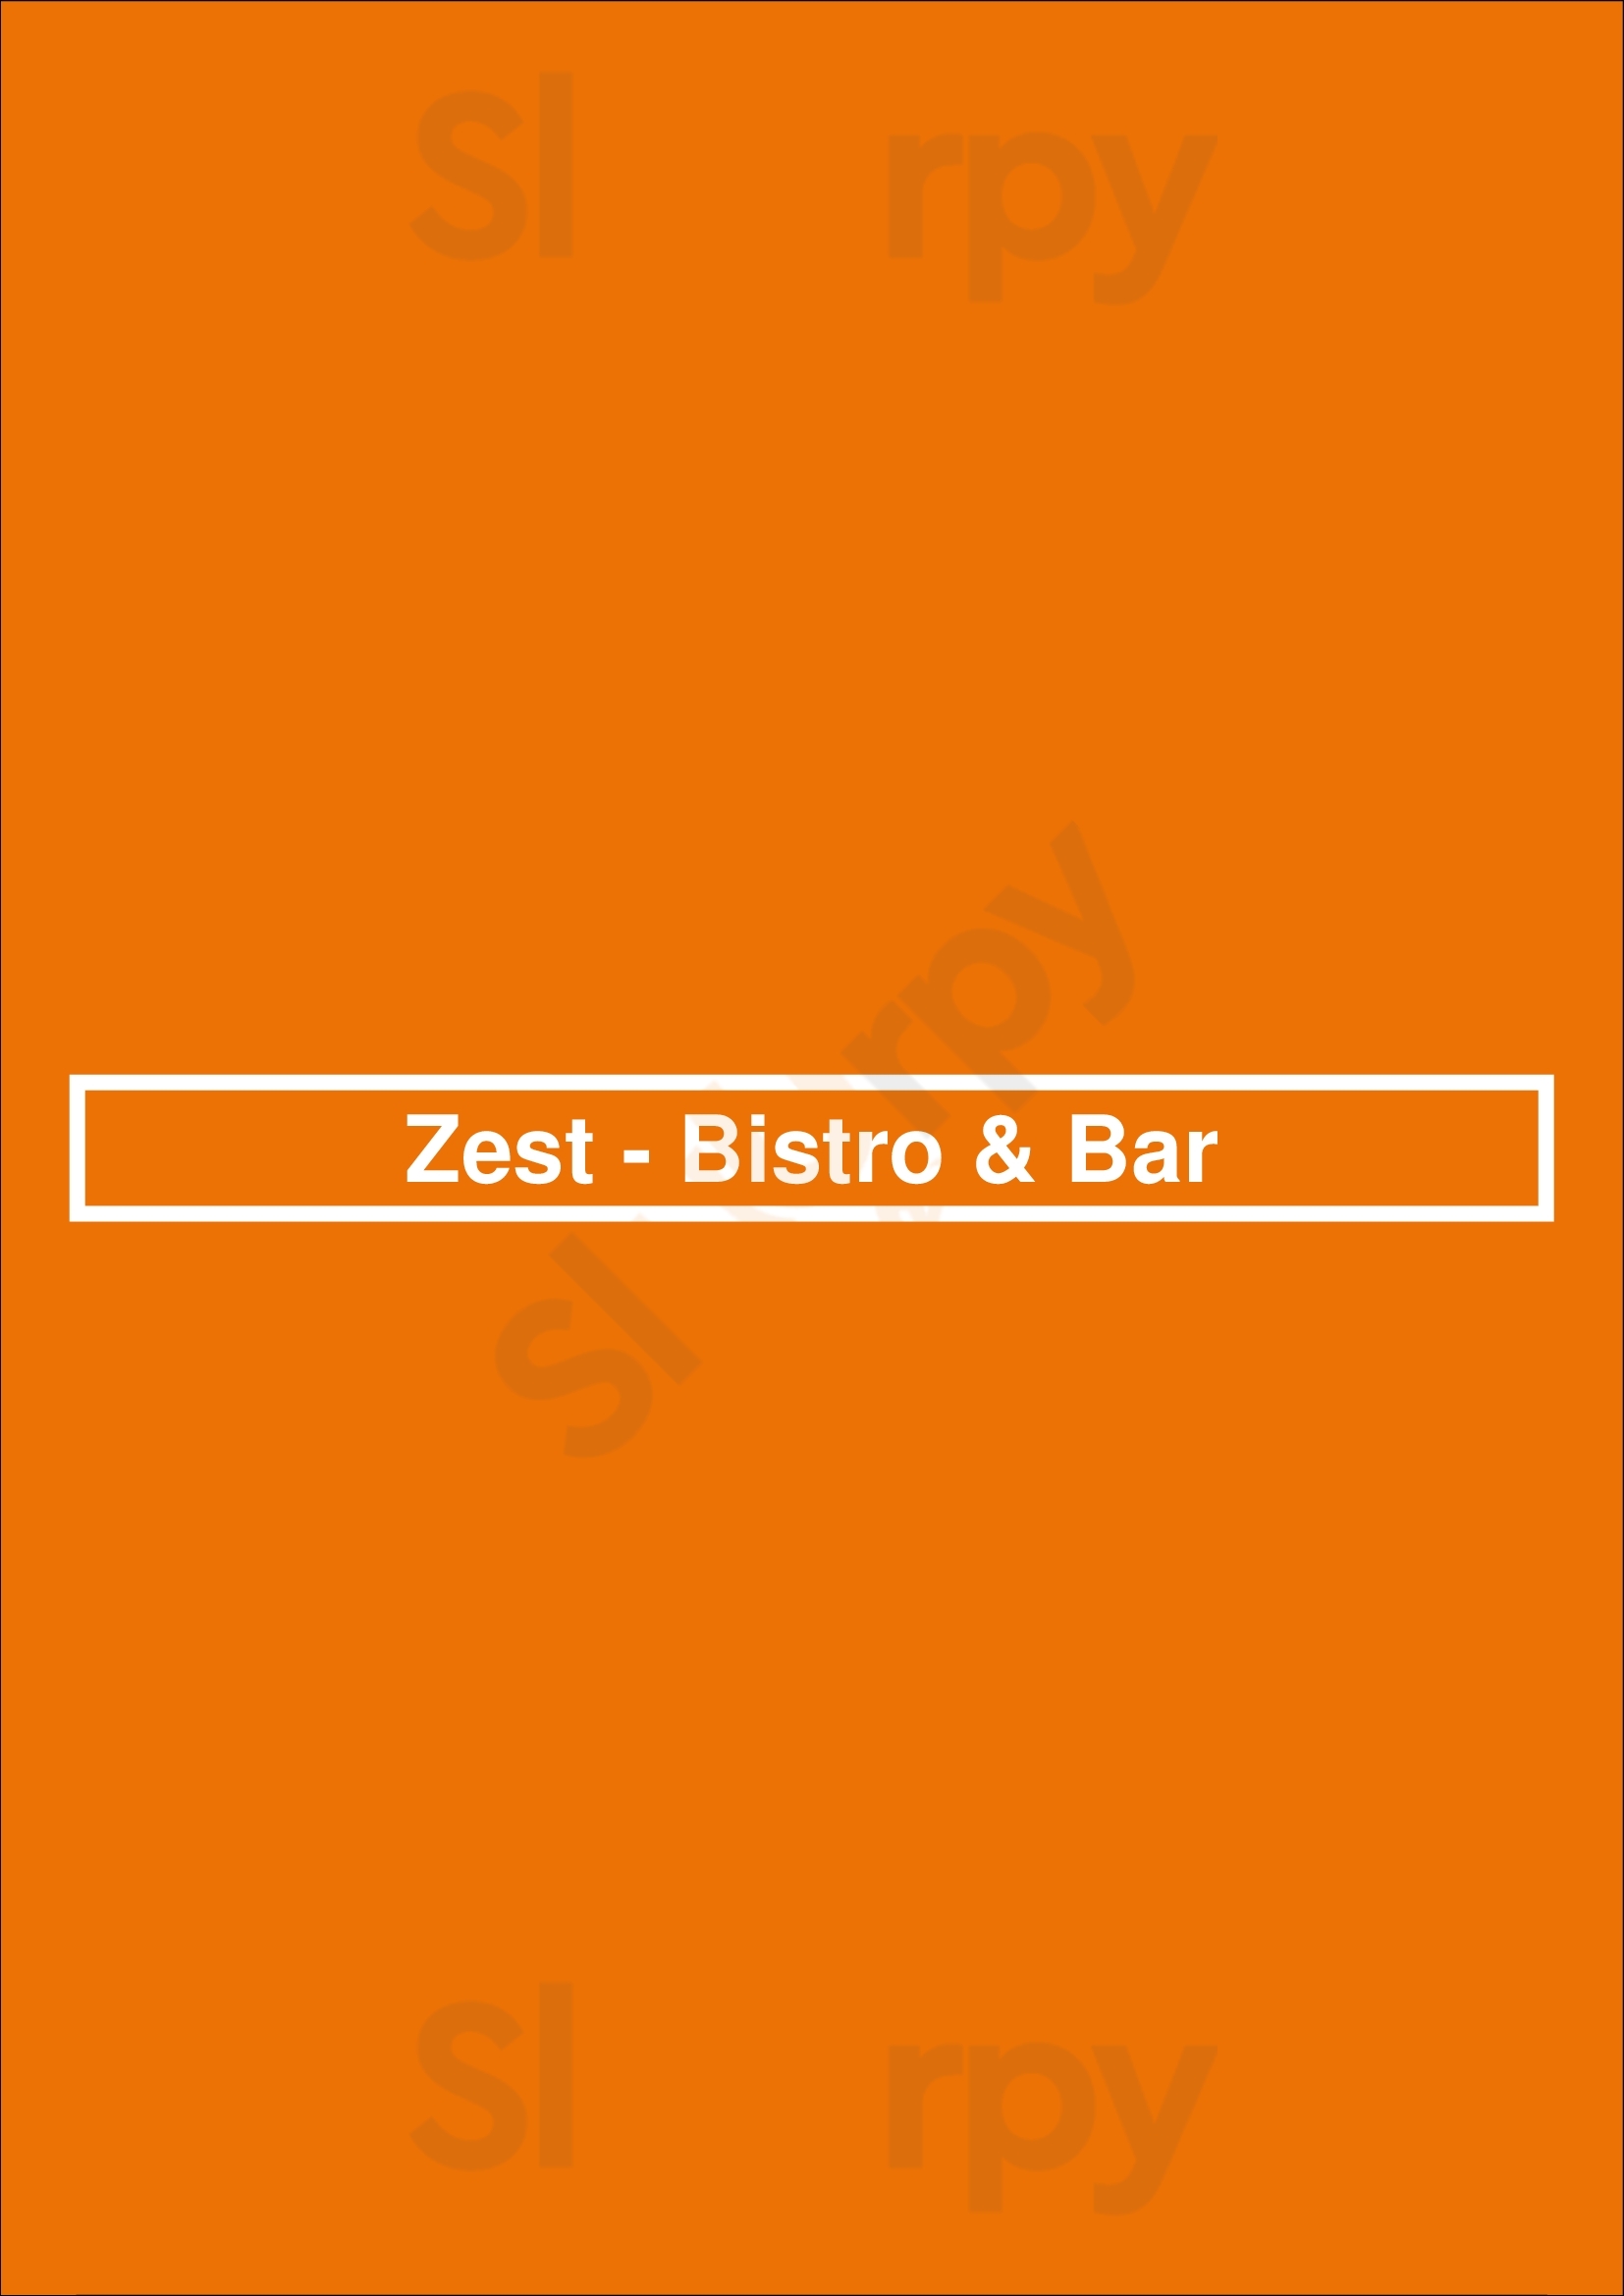 Zest - Bistro & Bar Las Vegas Menu - 1